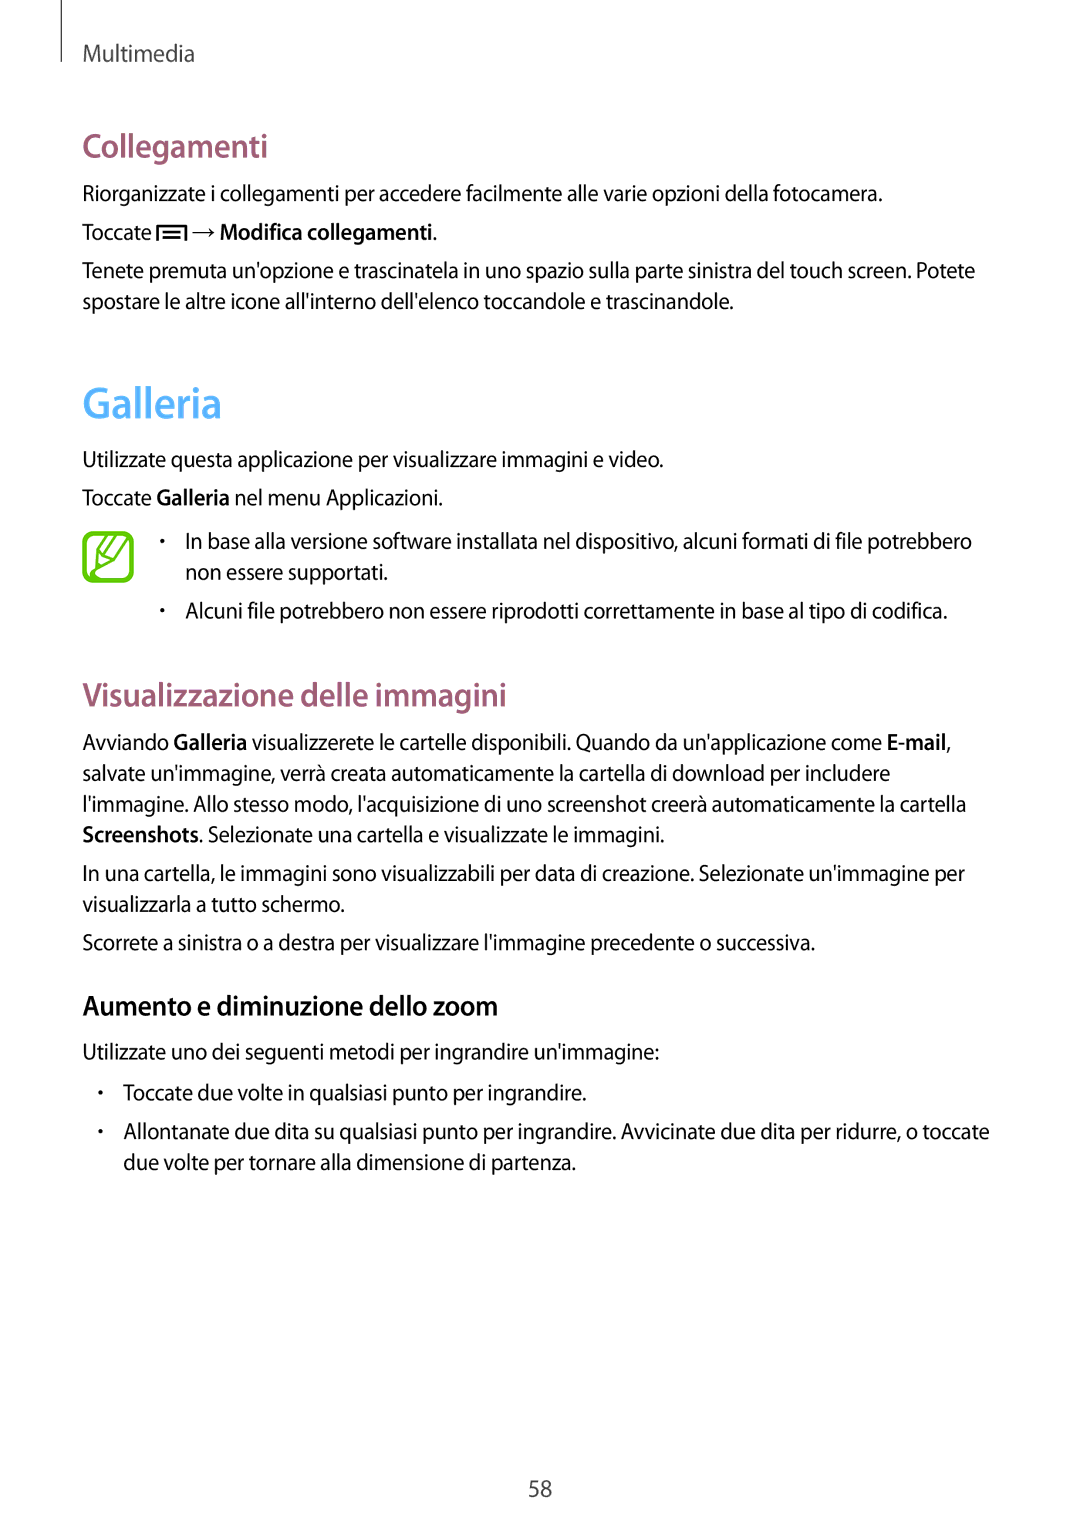 Samsung GT-S5280LKAITV manual Galleria, Collegamenti, Visualizzazione delle immagini, Aumento e diminuzione dello zoom 